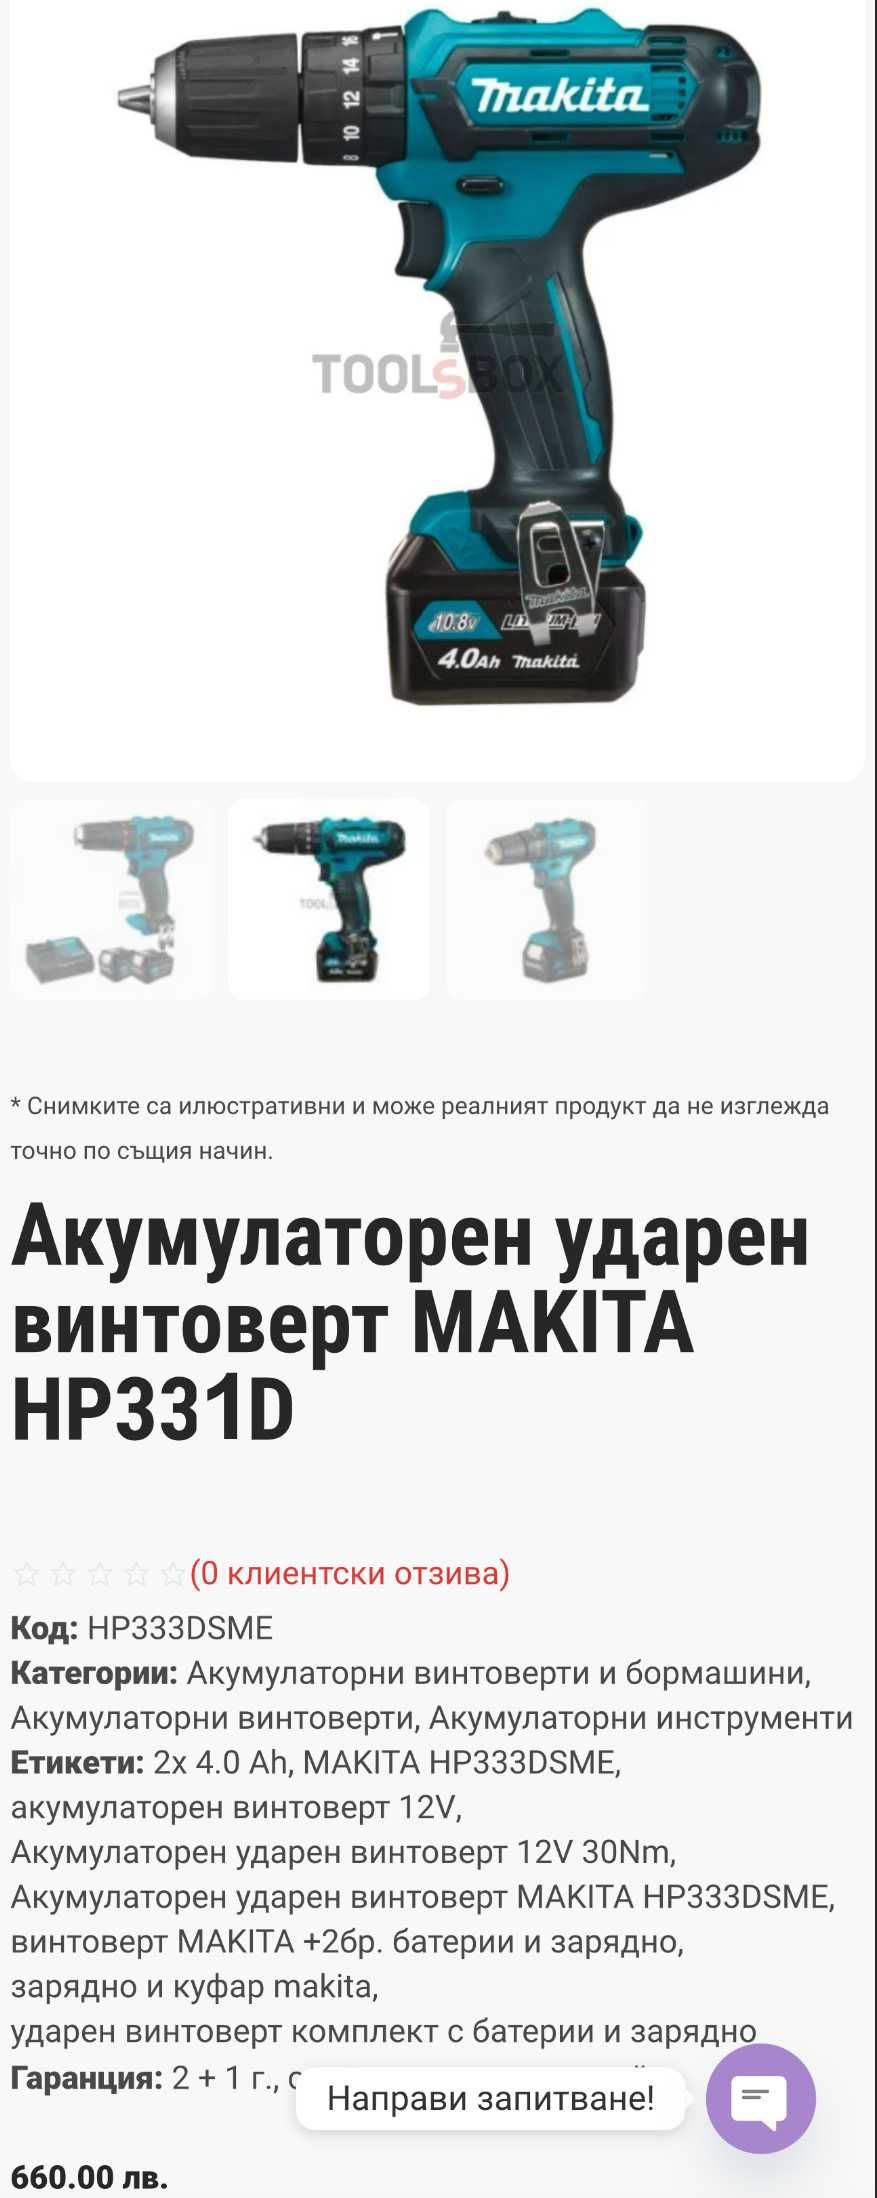 MAKiTA HP 331D - Ударен винтоверт 2x10.8V 4.0Ah